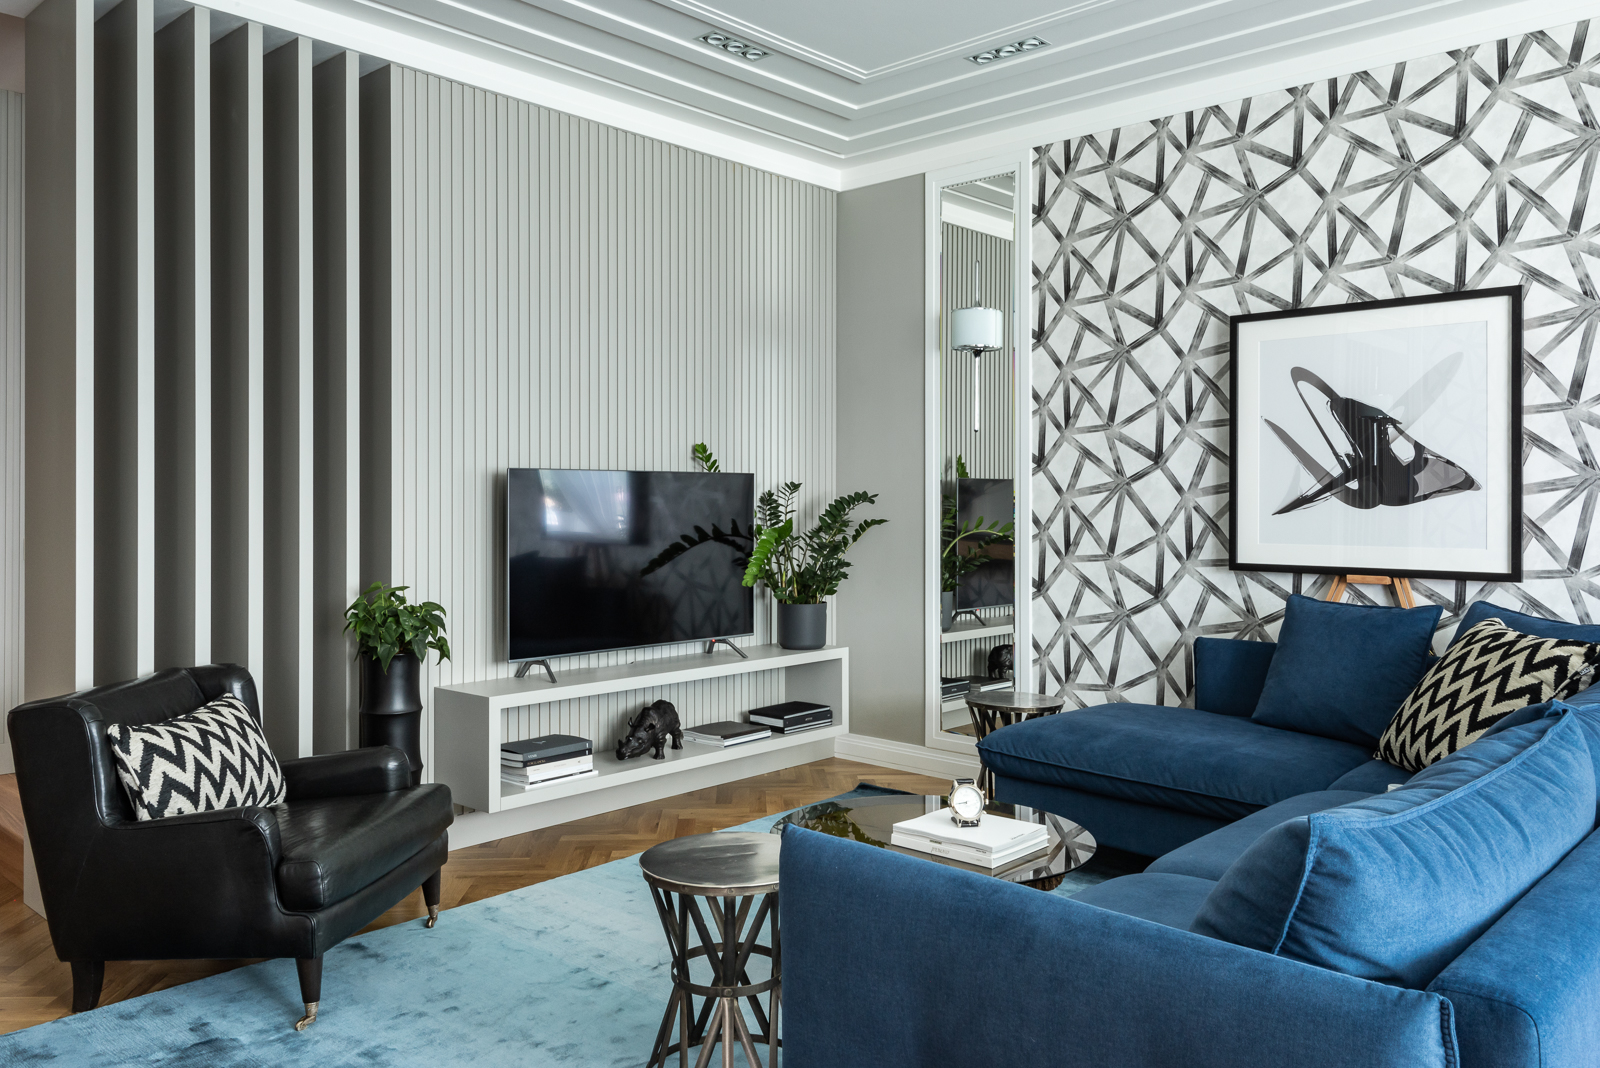 NTK nội thất Ksenia Yerlakova đã khéo léo kết hợp ghế sofa với chất liệu vải nhung màu xanh coban bắt mắt với chất liệu da thuộc màu đen của chiếc ghế bành tạo cái nhìn mạnh mẽ, vững chãi cho phòng khách trong căn hộ ở Yekaterinburg (Nga).